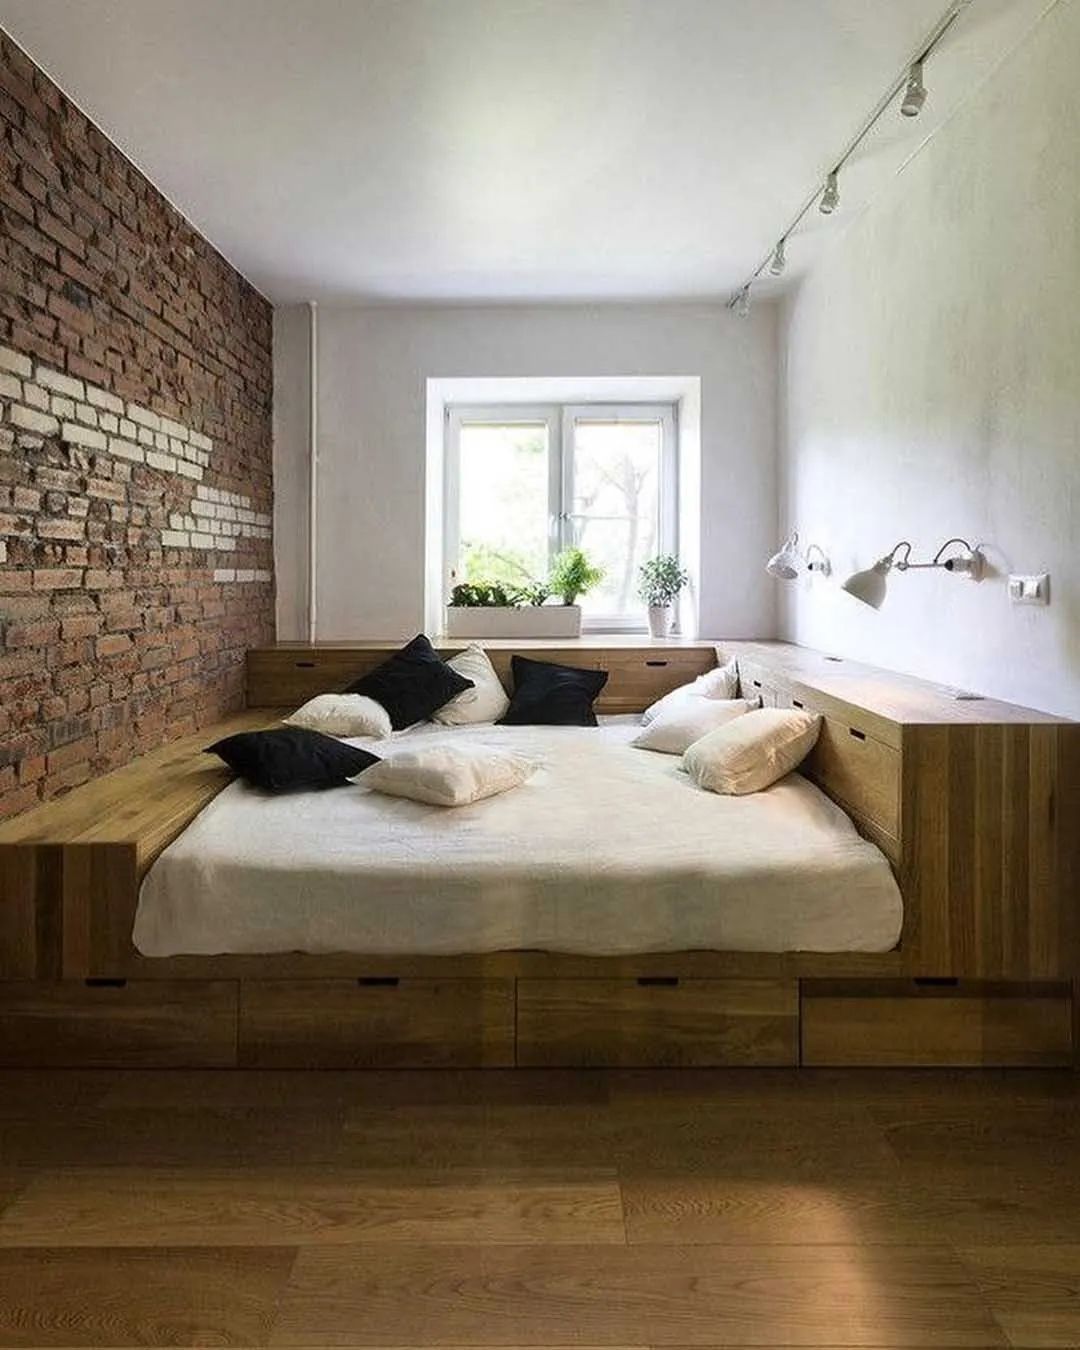 3㎡地台床设计图鉴：80后家居标配，卧室不放床还大两倍，比榻榻米更好用！